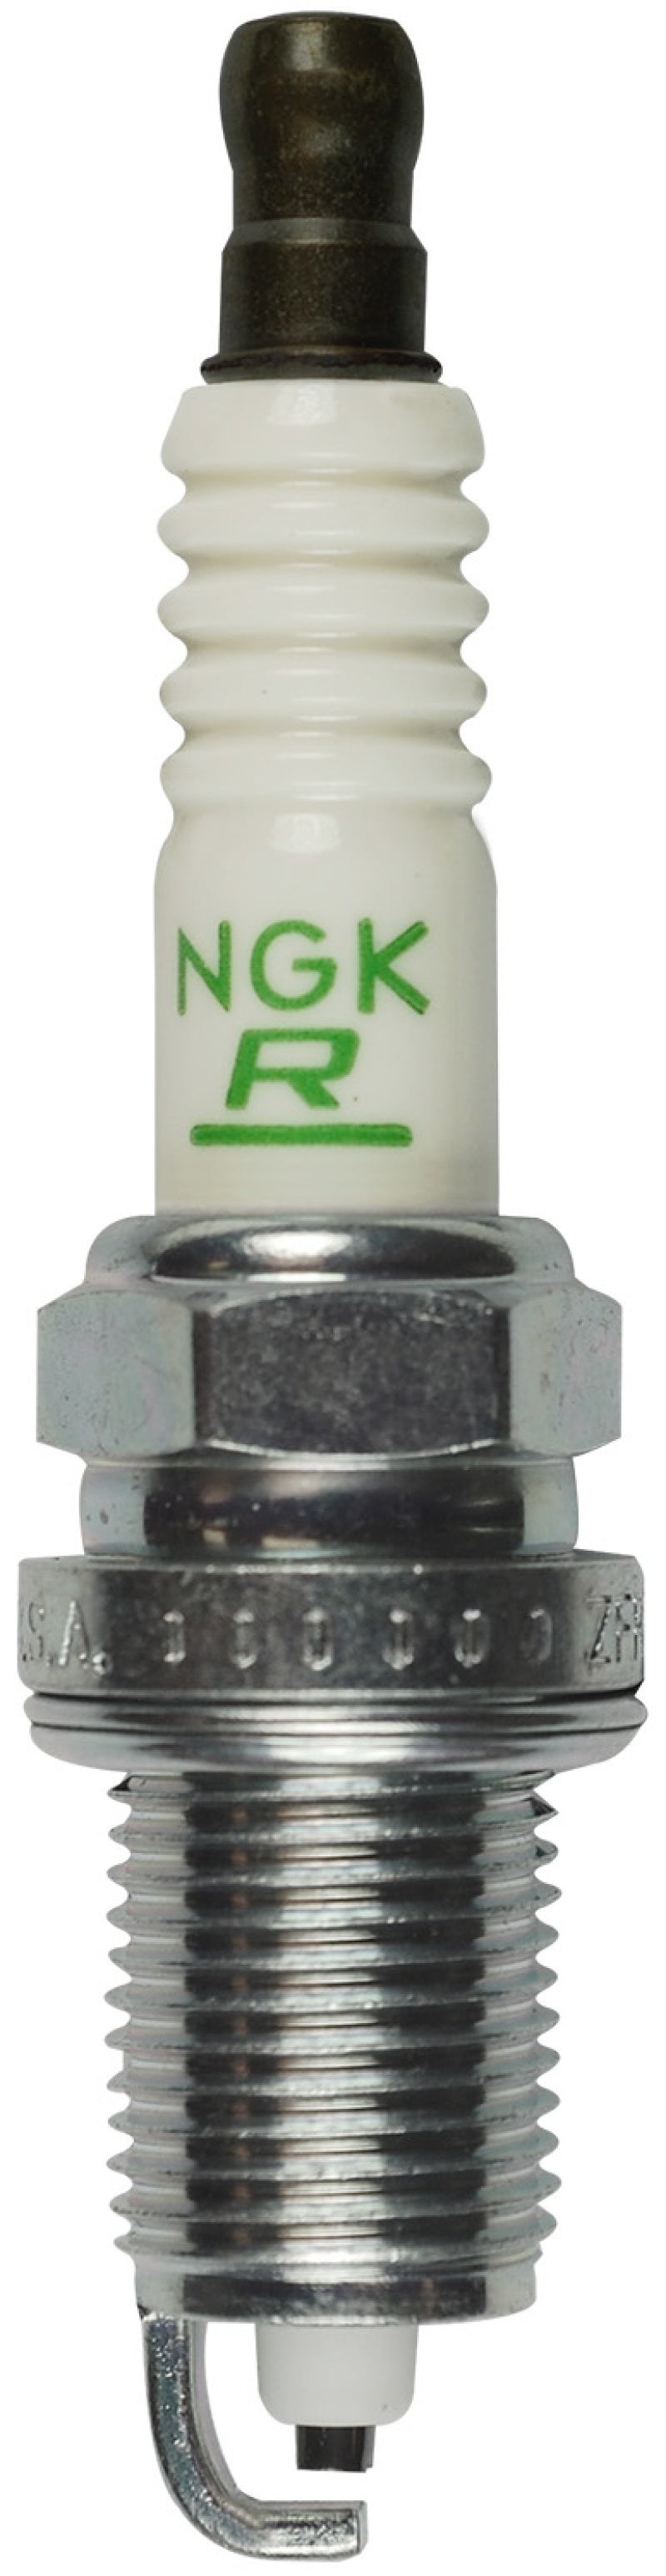 NGK V-Power Spark Plug Box of 4 (ZFR5A-11)